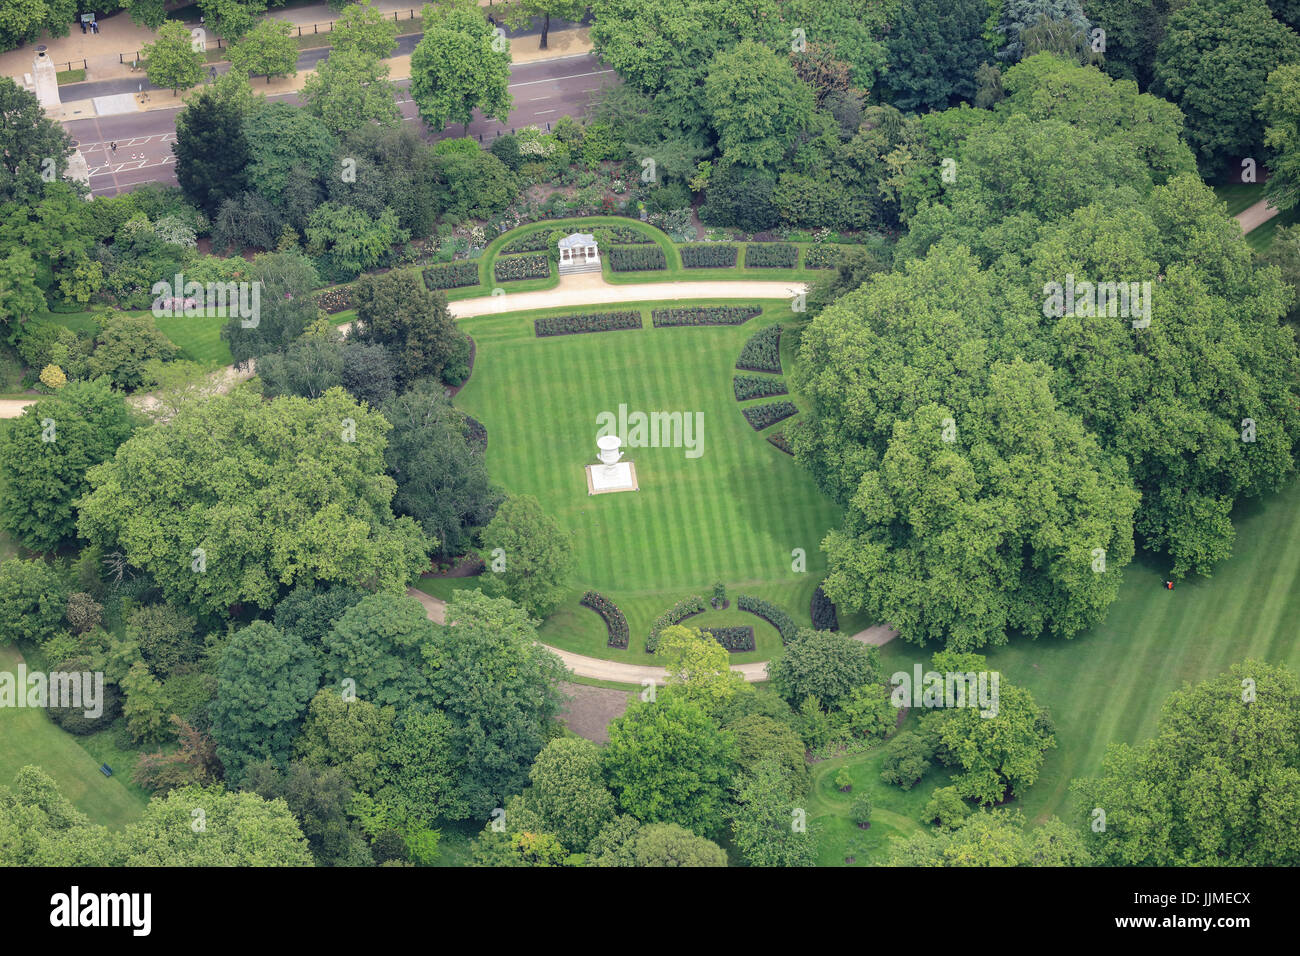 Une vue aérienne de les jardins de Buckingham Palace, avec le Vase Waterloo visible sur la pelouse Banque D'Images